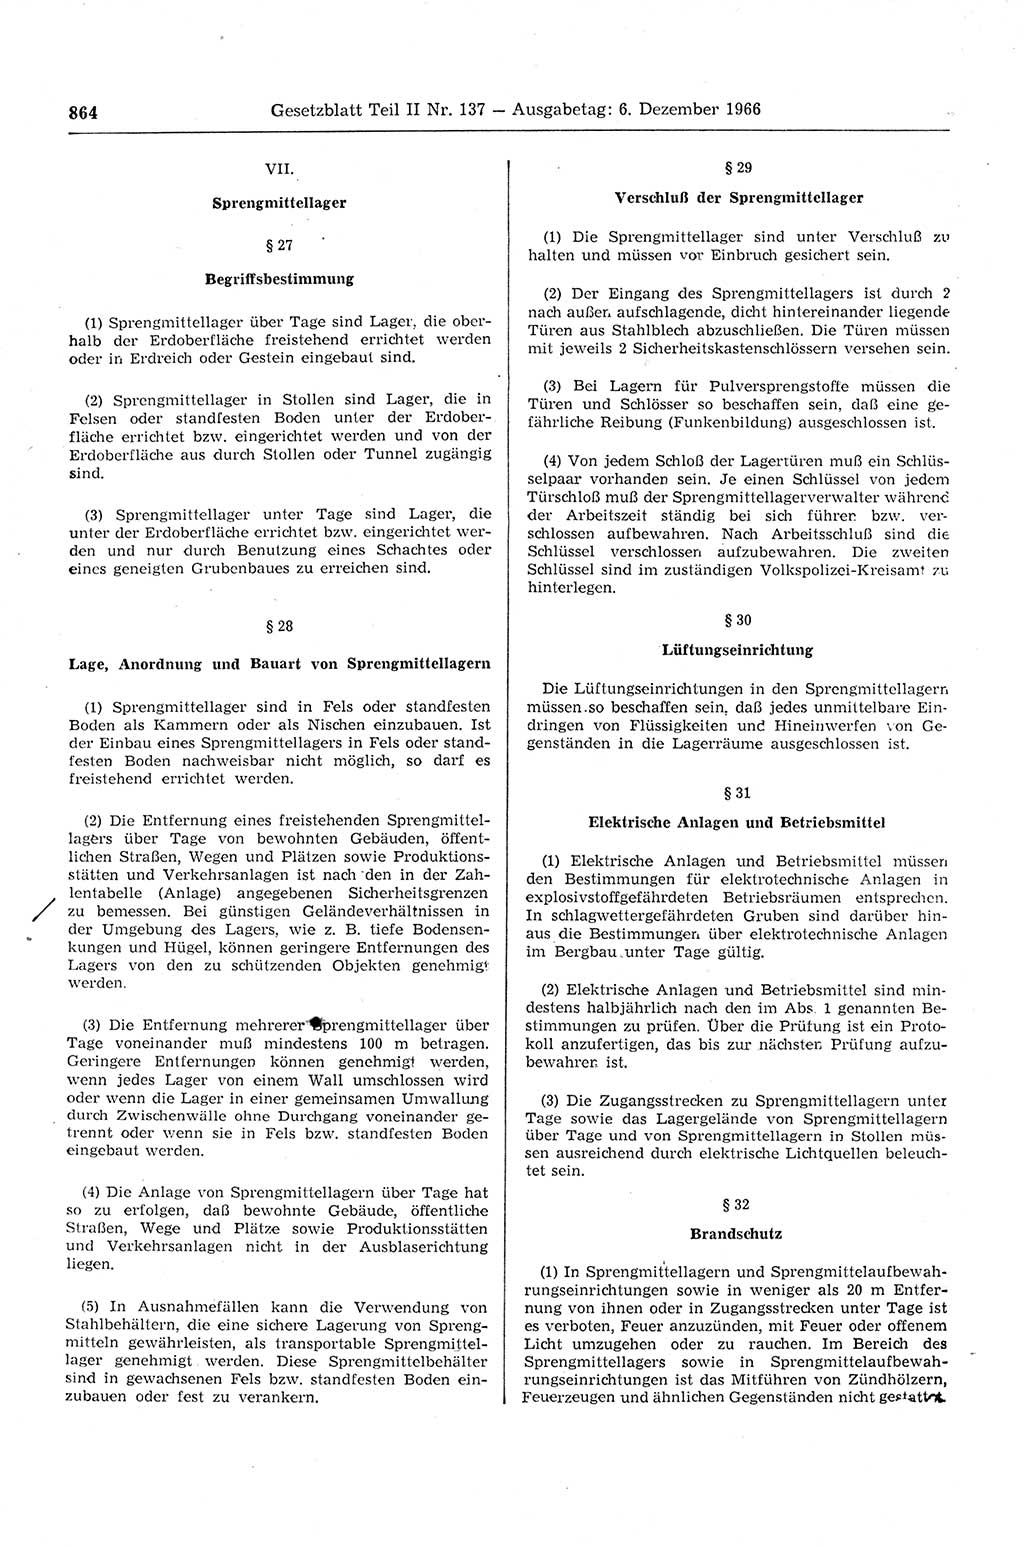 Gesetzblatt (GBl.) der Deutschen Demokratischen Republik (DDR) Teil ⅠⅠ 1966, Seite 864 (GBl. DDR ⅠⅠ 1966, S. 864)